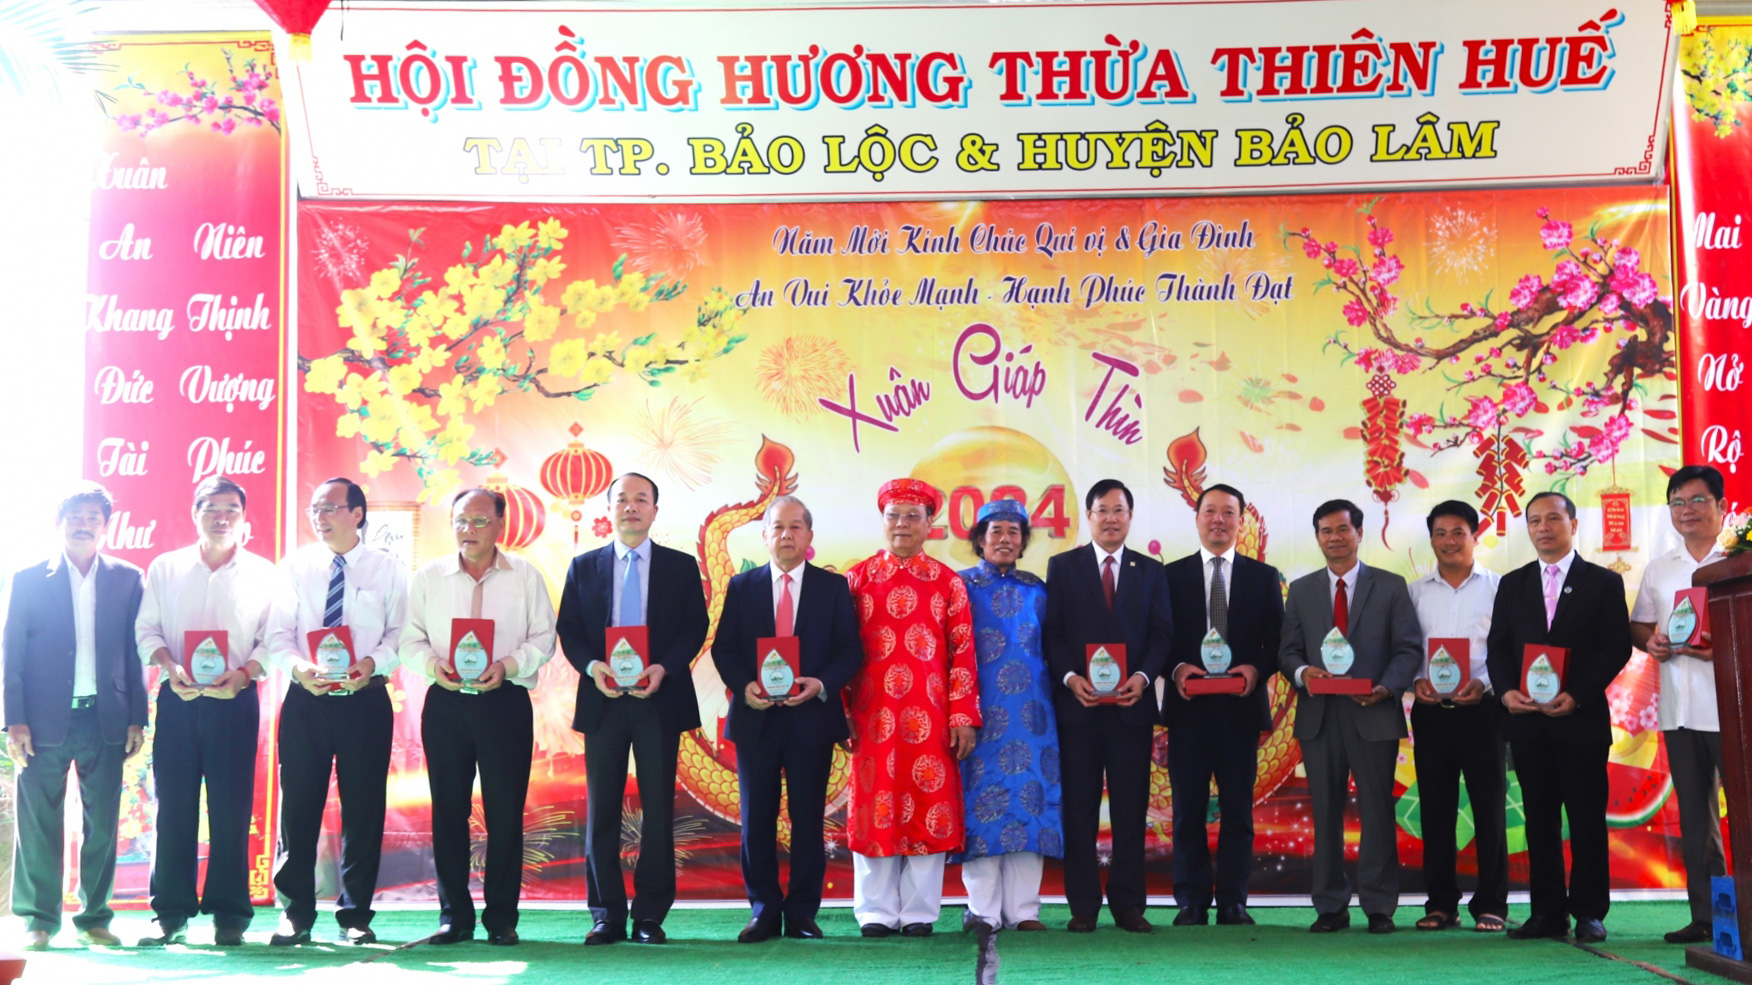 Hội đồng hương Thừa Thiên Huế chú trọng thực hiện công tác an sinh xã hội